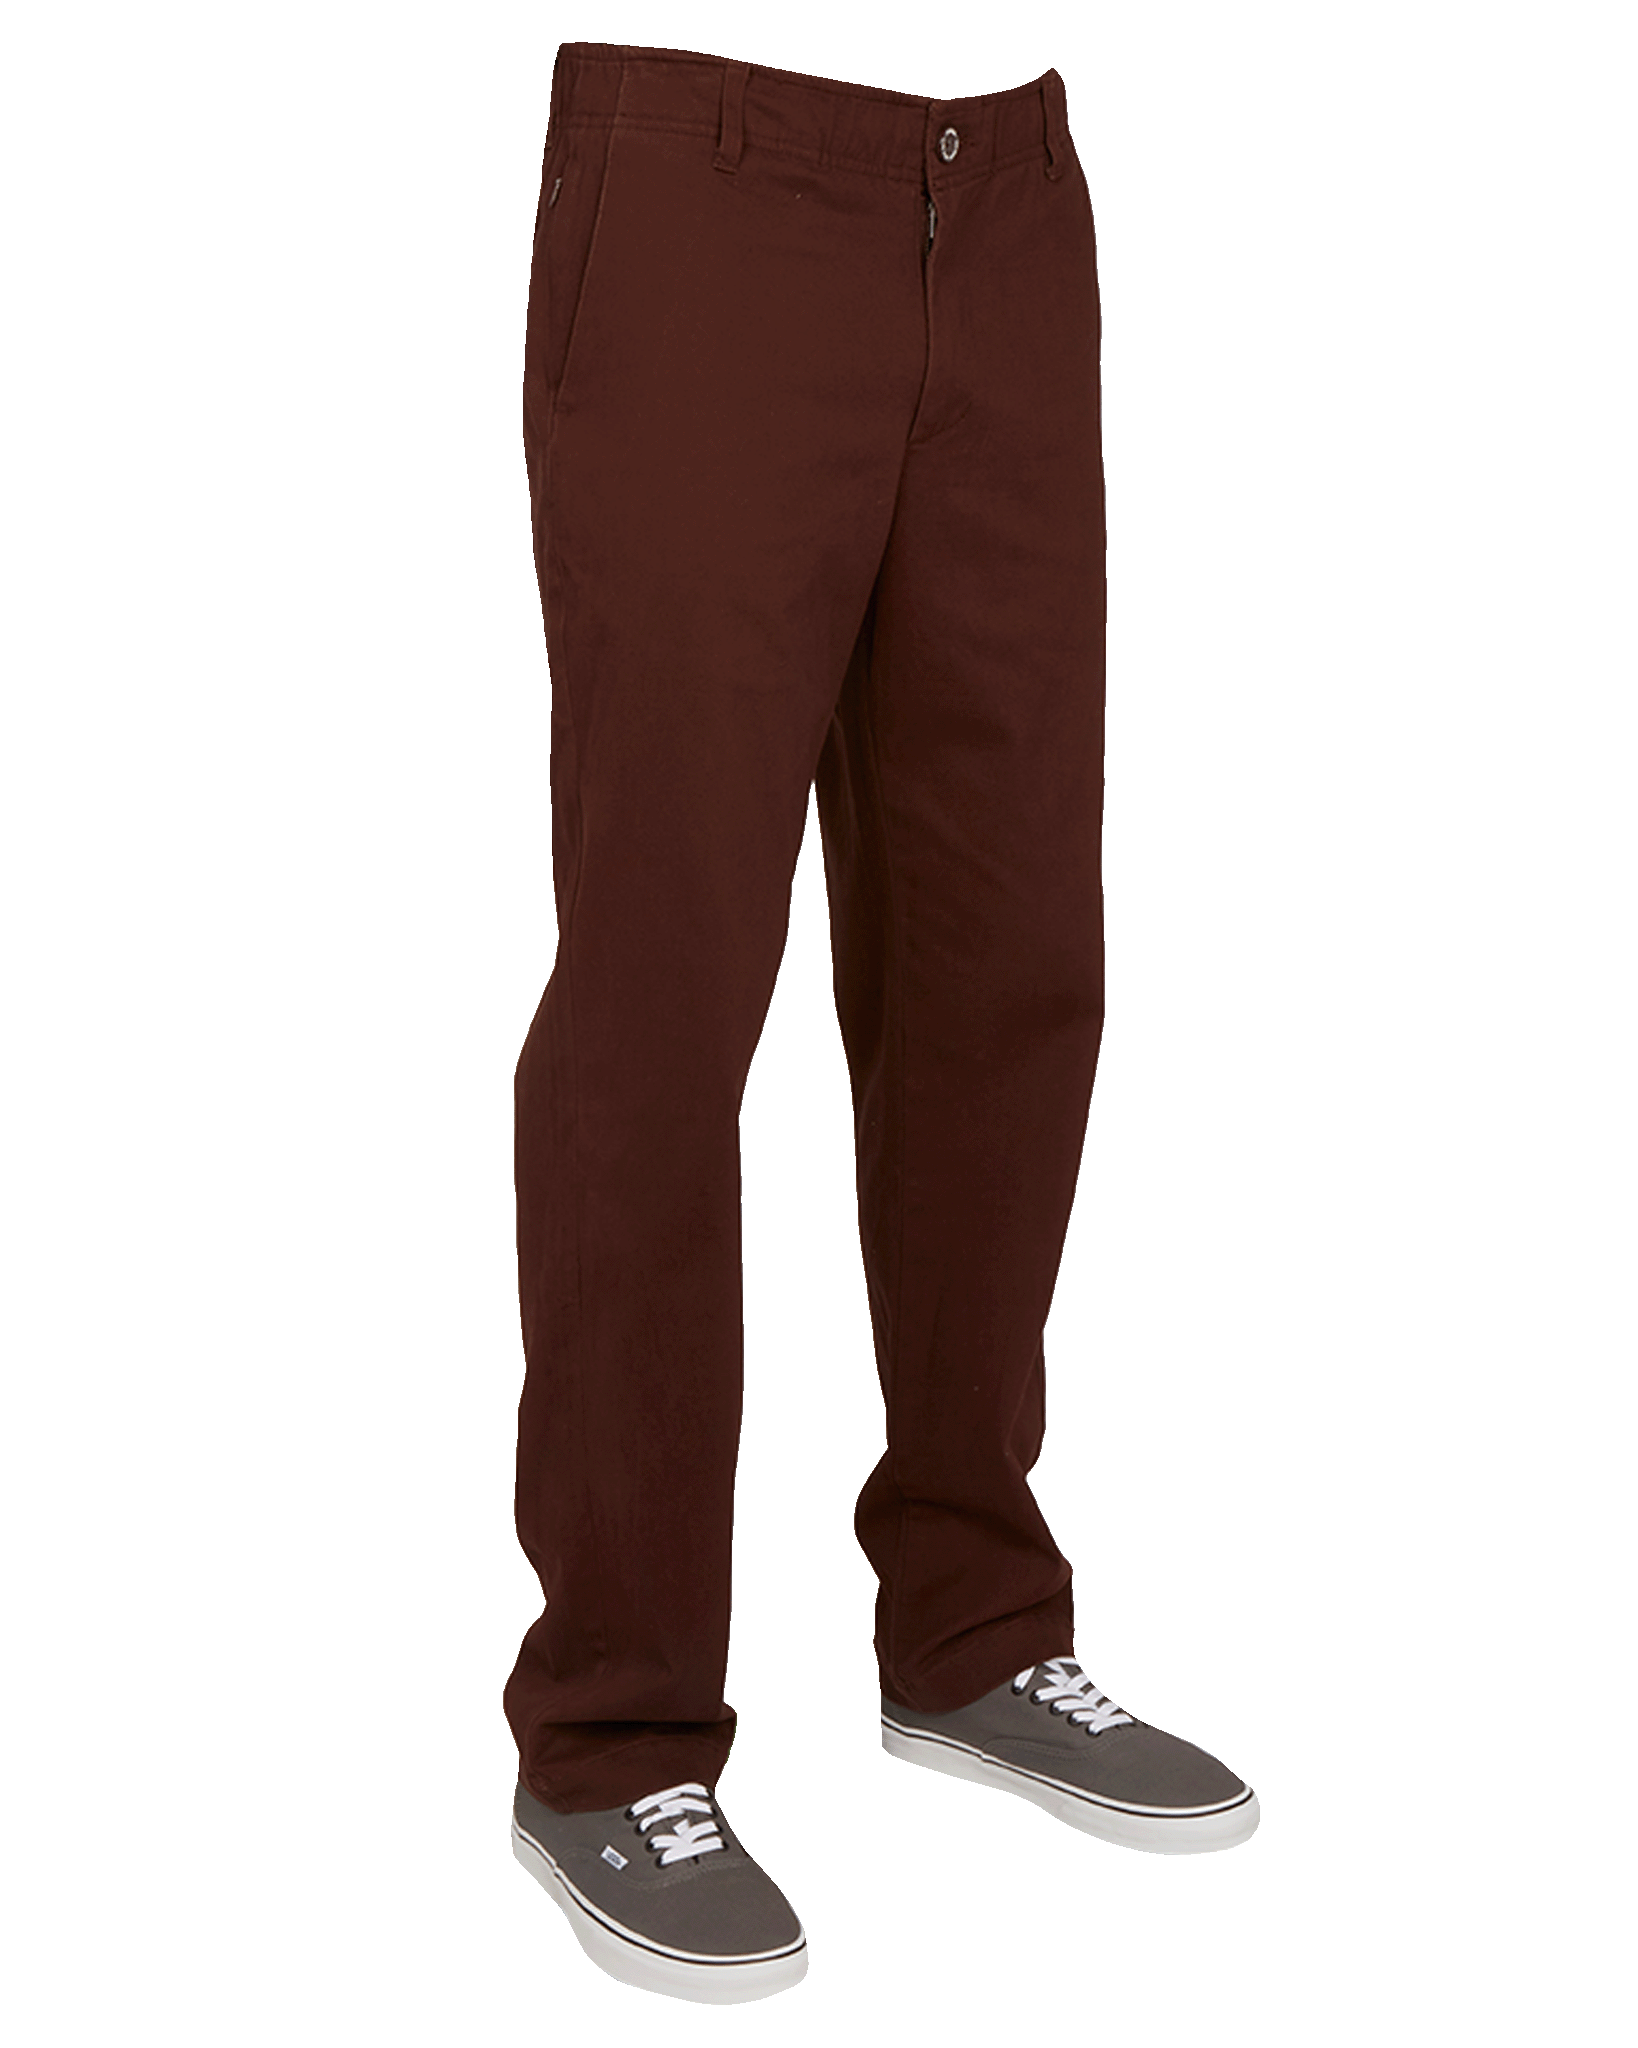 Men's Chino Pants - Brown | Dixxon Flannel Co.